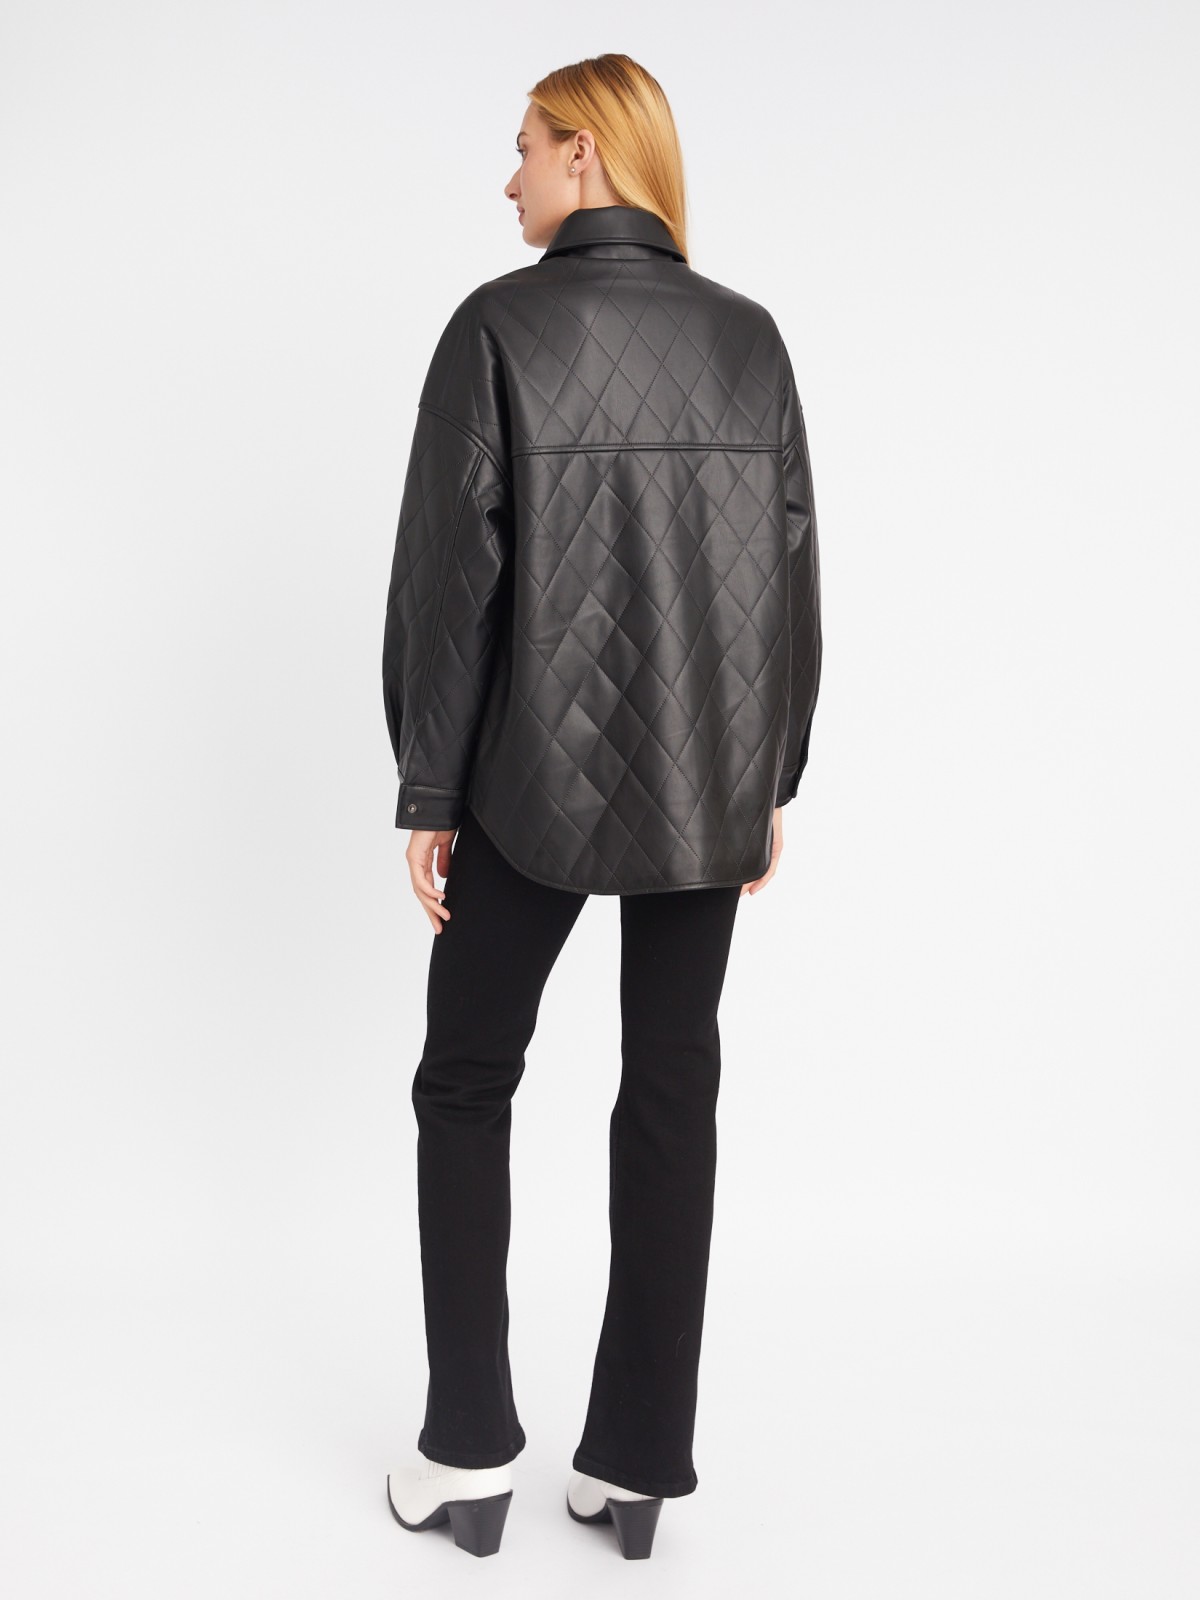 Стёганая куртка-рубашка из экокожи на синтепоне zolla 023335102044, цвет черный, размер XS - фото 6